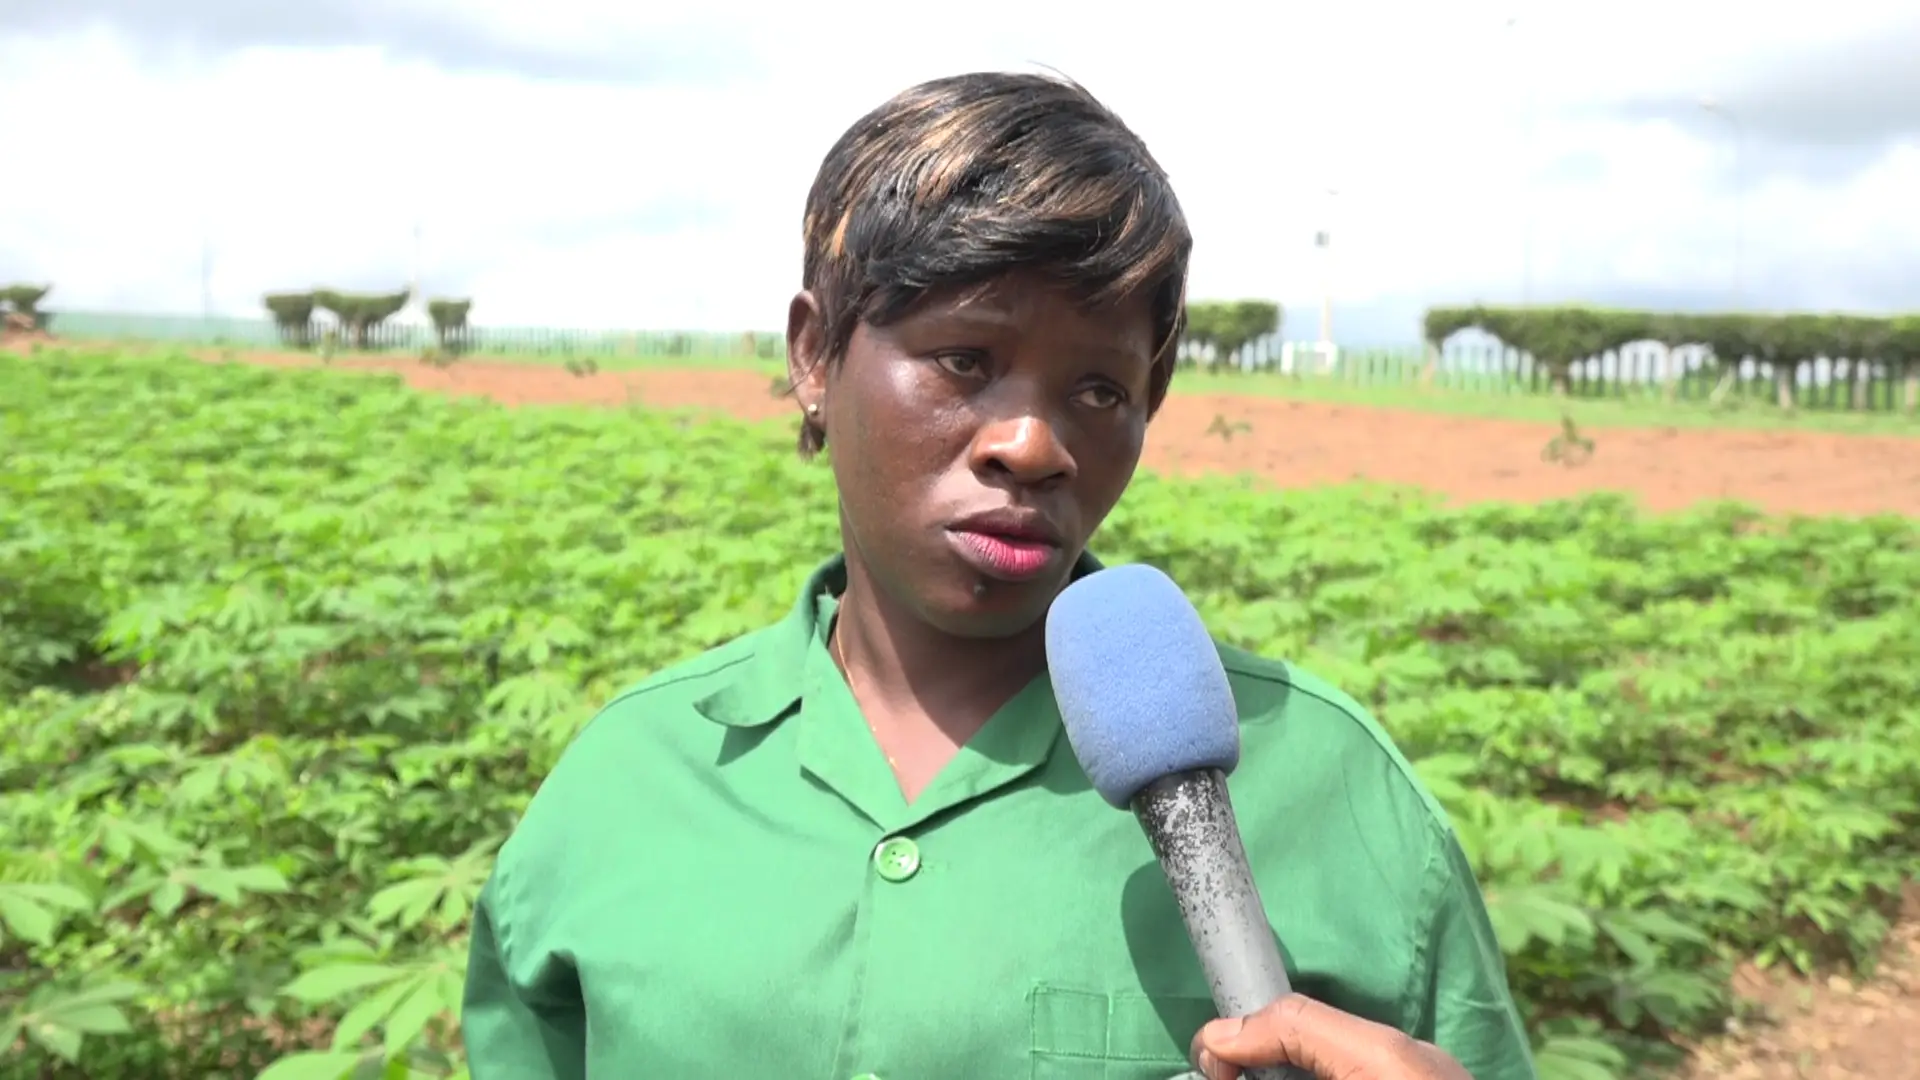 Côte d’Ivoire : Viviane, jeune diplômée ne jure que par l’agriculture pour réaliser ses rêves